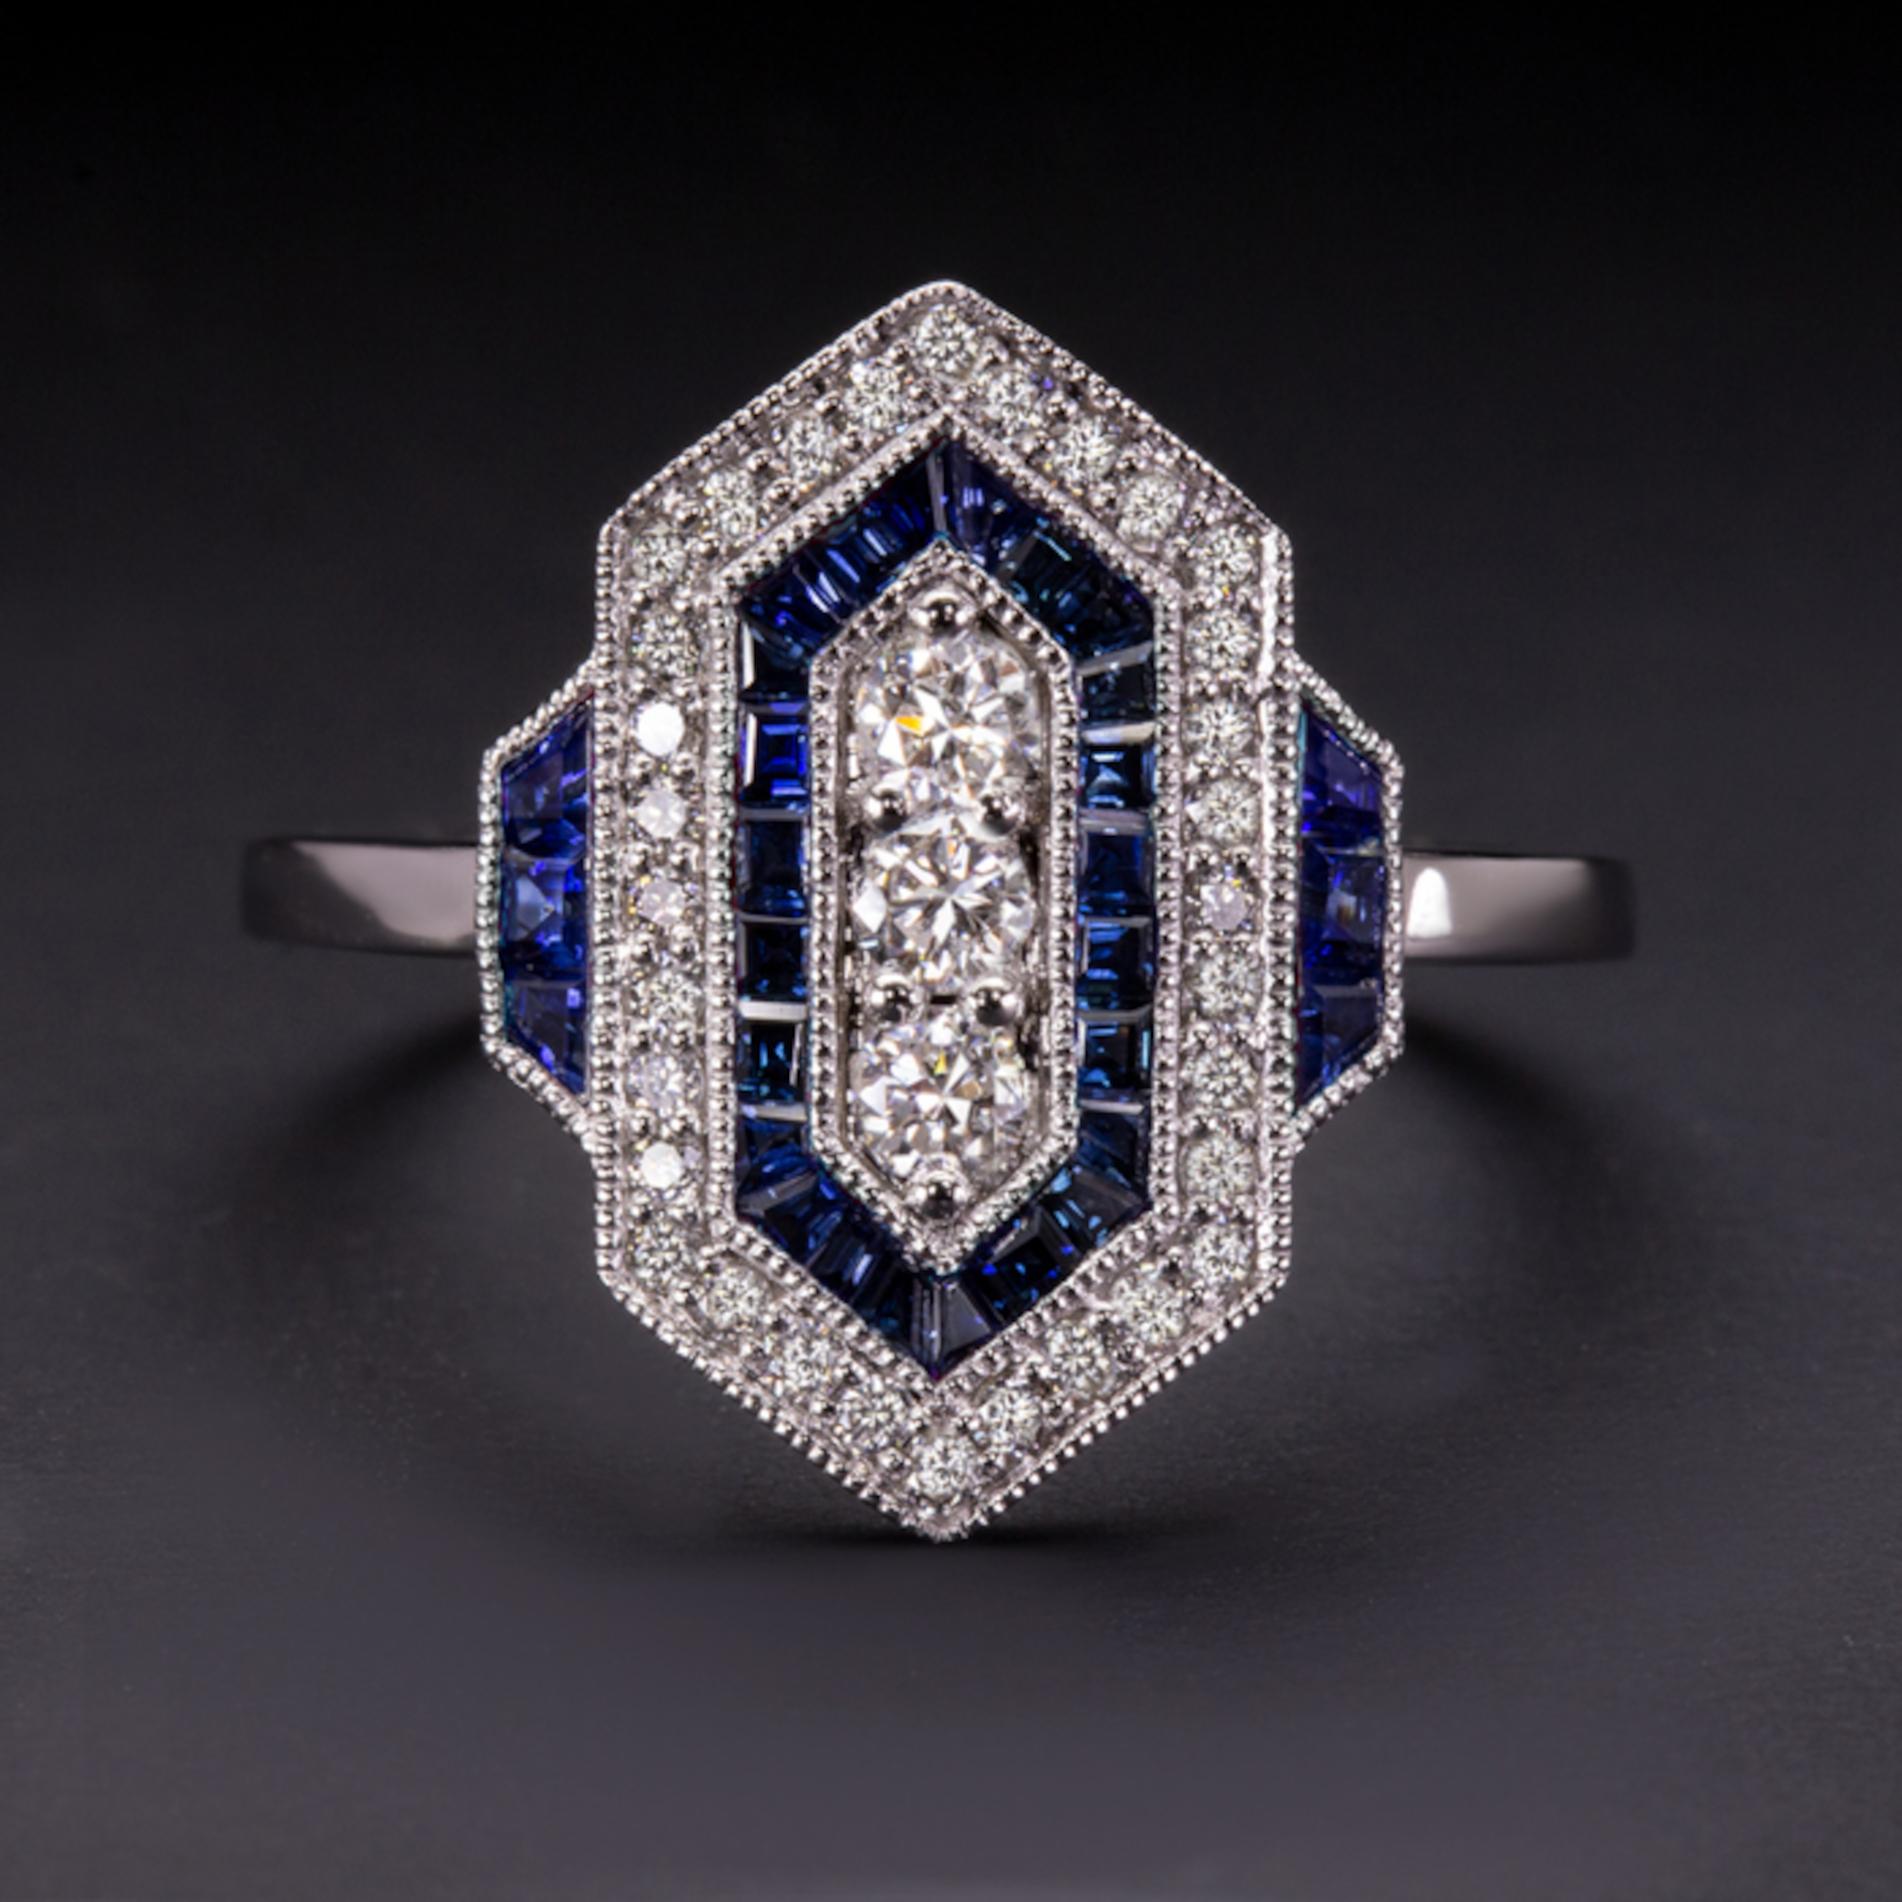 Le design géométrique chic scintille de diamants éclatants et est ponctué de riches lignes bleues de saphirs méticuleusement taillés sur mesure. L'effet est saisissant, magnifiquement sophistiqué, et éternellement élégant ! Que vous achetiez pour